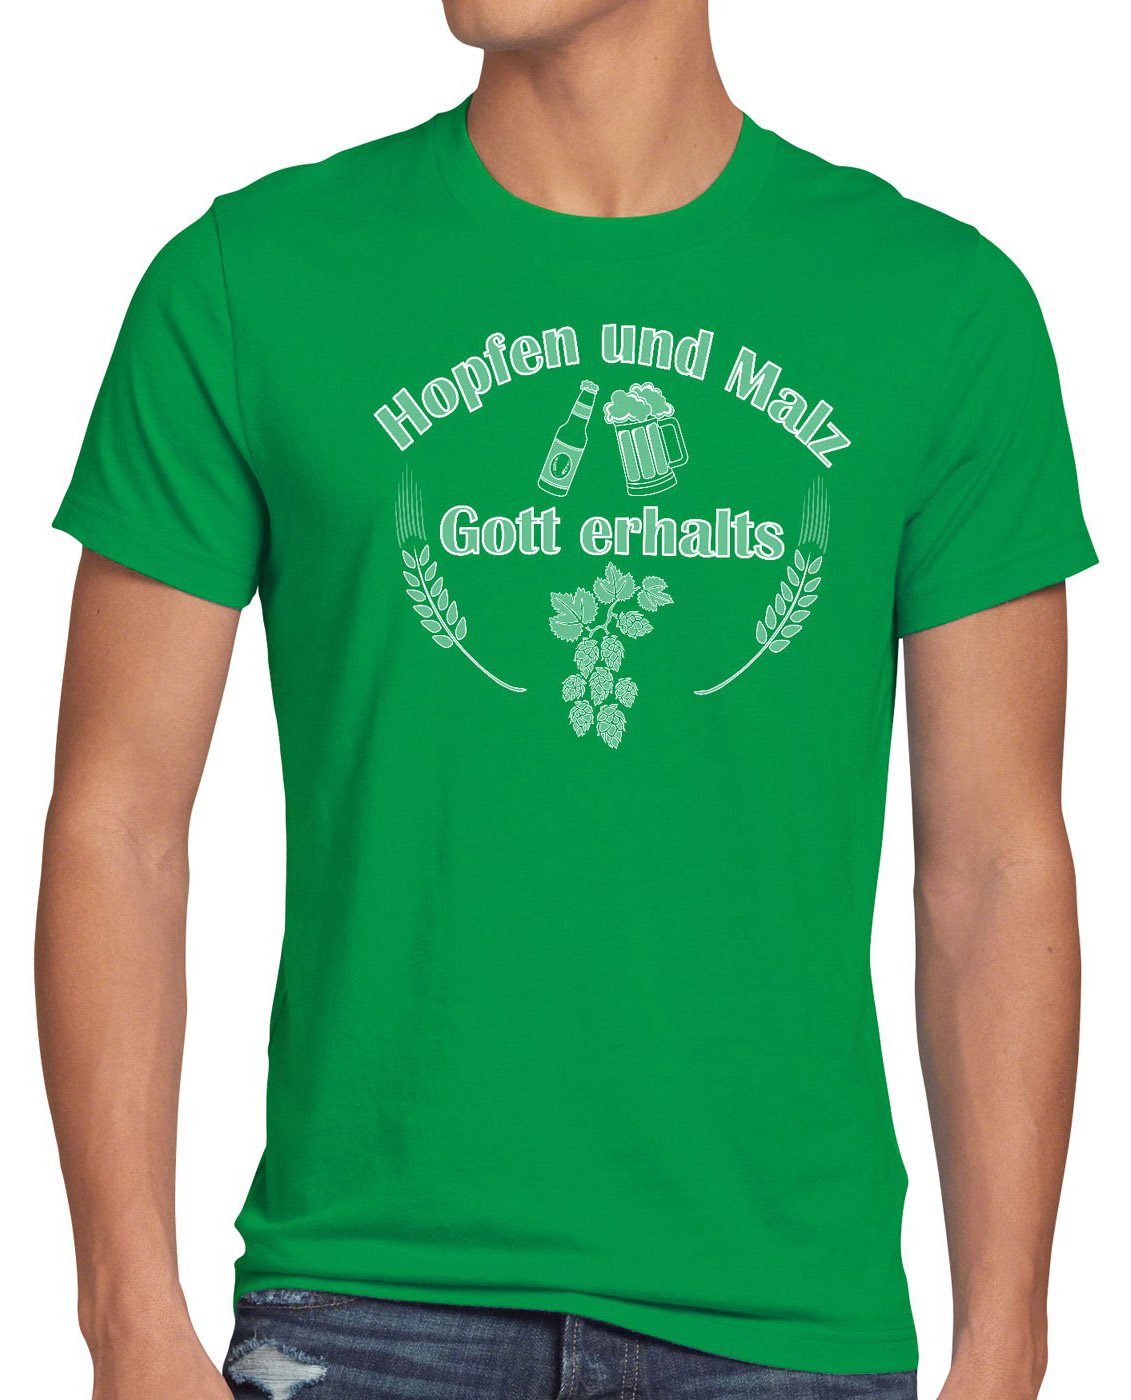 style3 Print-Shirt Herren T-Shirt Hopfen und Malz Gott erhalts Fun Funshirt Bier Spruchshirt Spruch grün